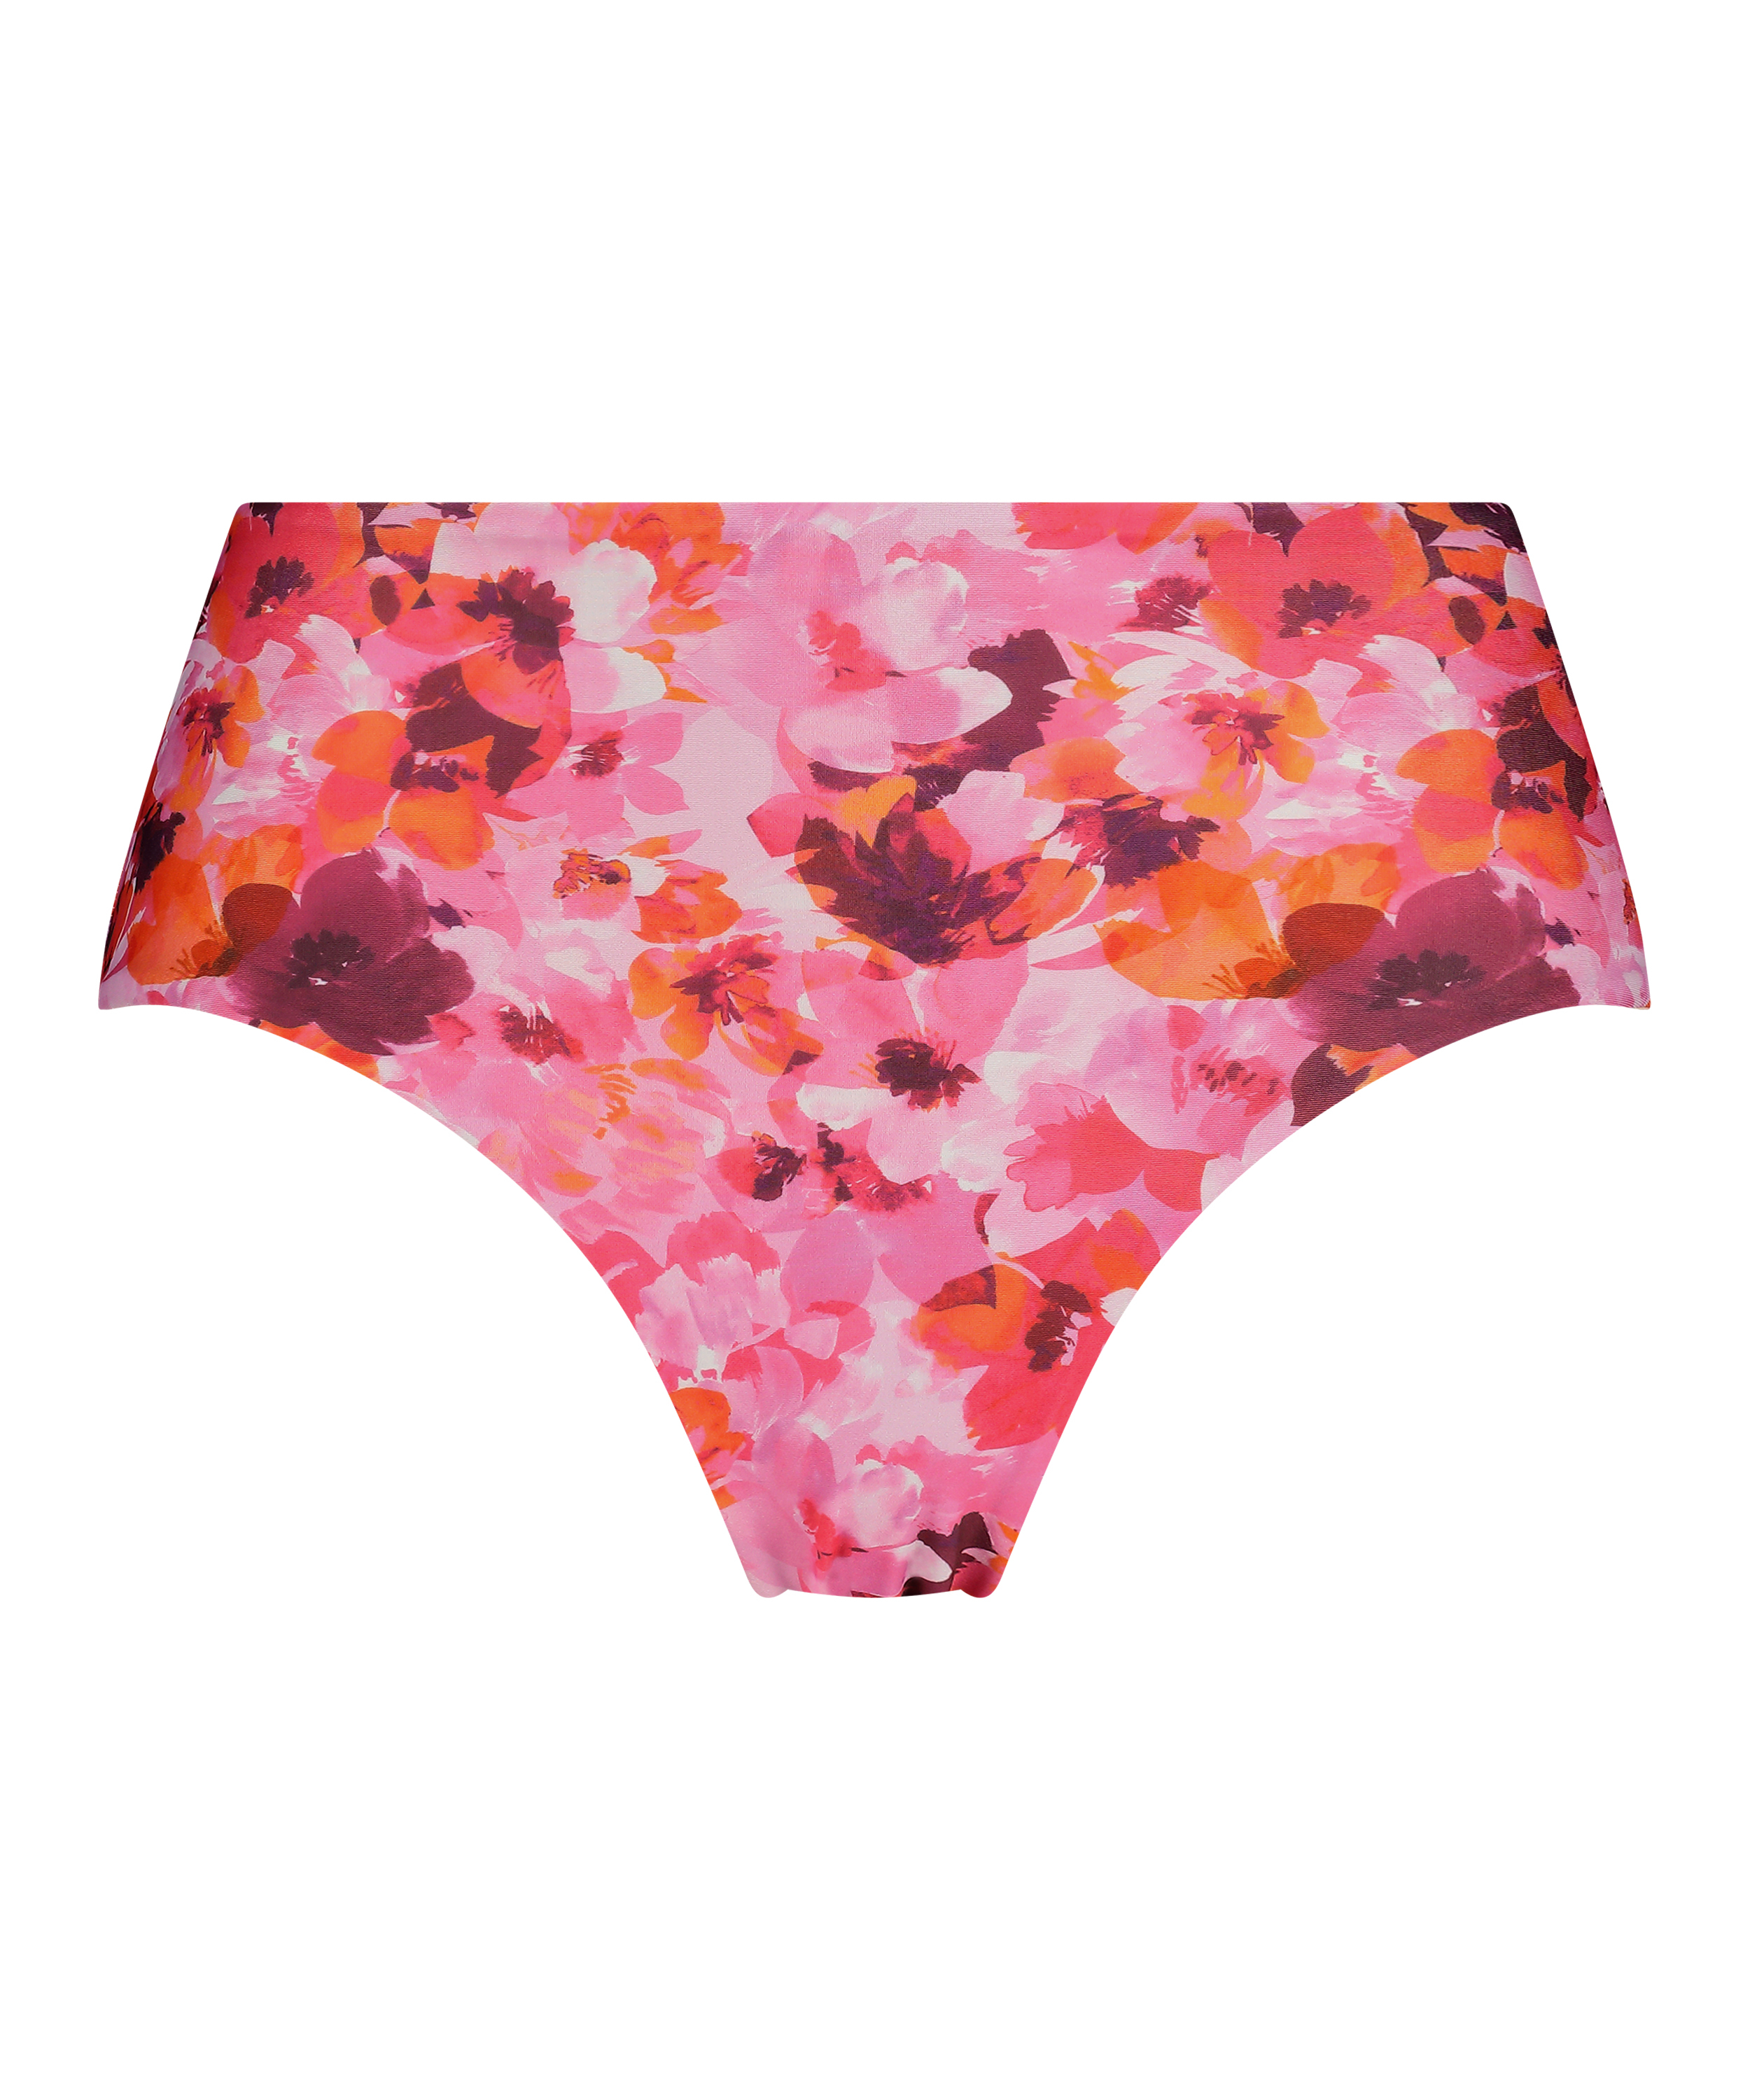 Rio Bikinibroekje Floral, Roze, main